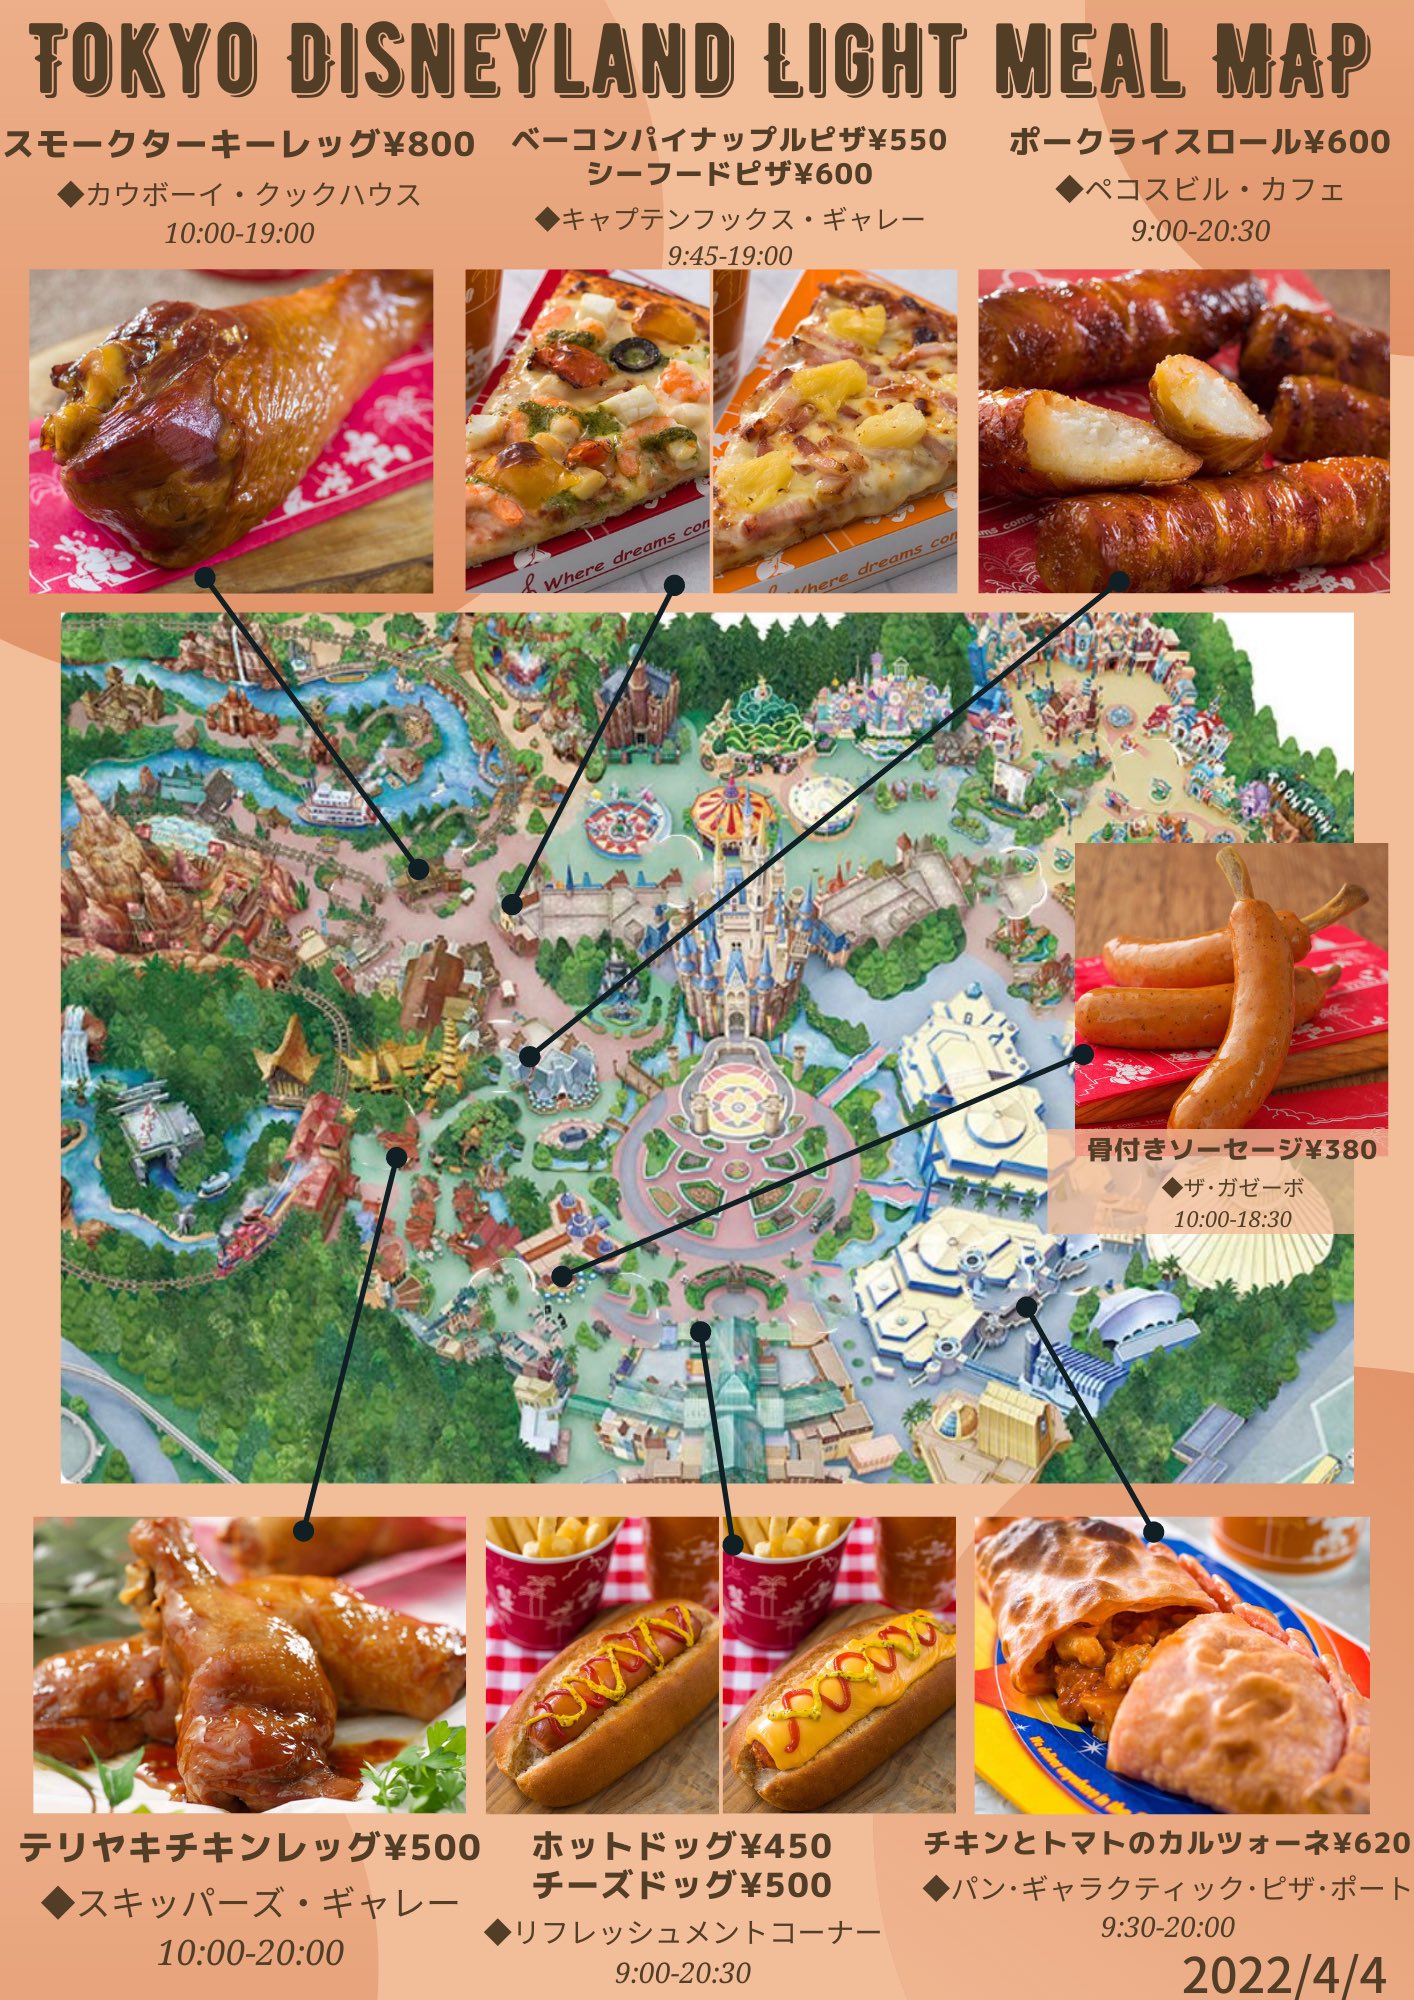 きょん マップ ディズニーランドの軽食 食べ歩きマップを更新しました ランドで好きなのは テリヤキチキンレッグと ピザです ハンターズ パイもおすすめ Tdr Food ディズニーランド T Co Jwdrndgdpq Twitter